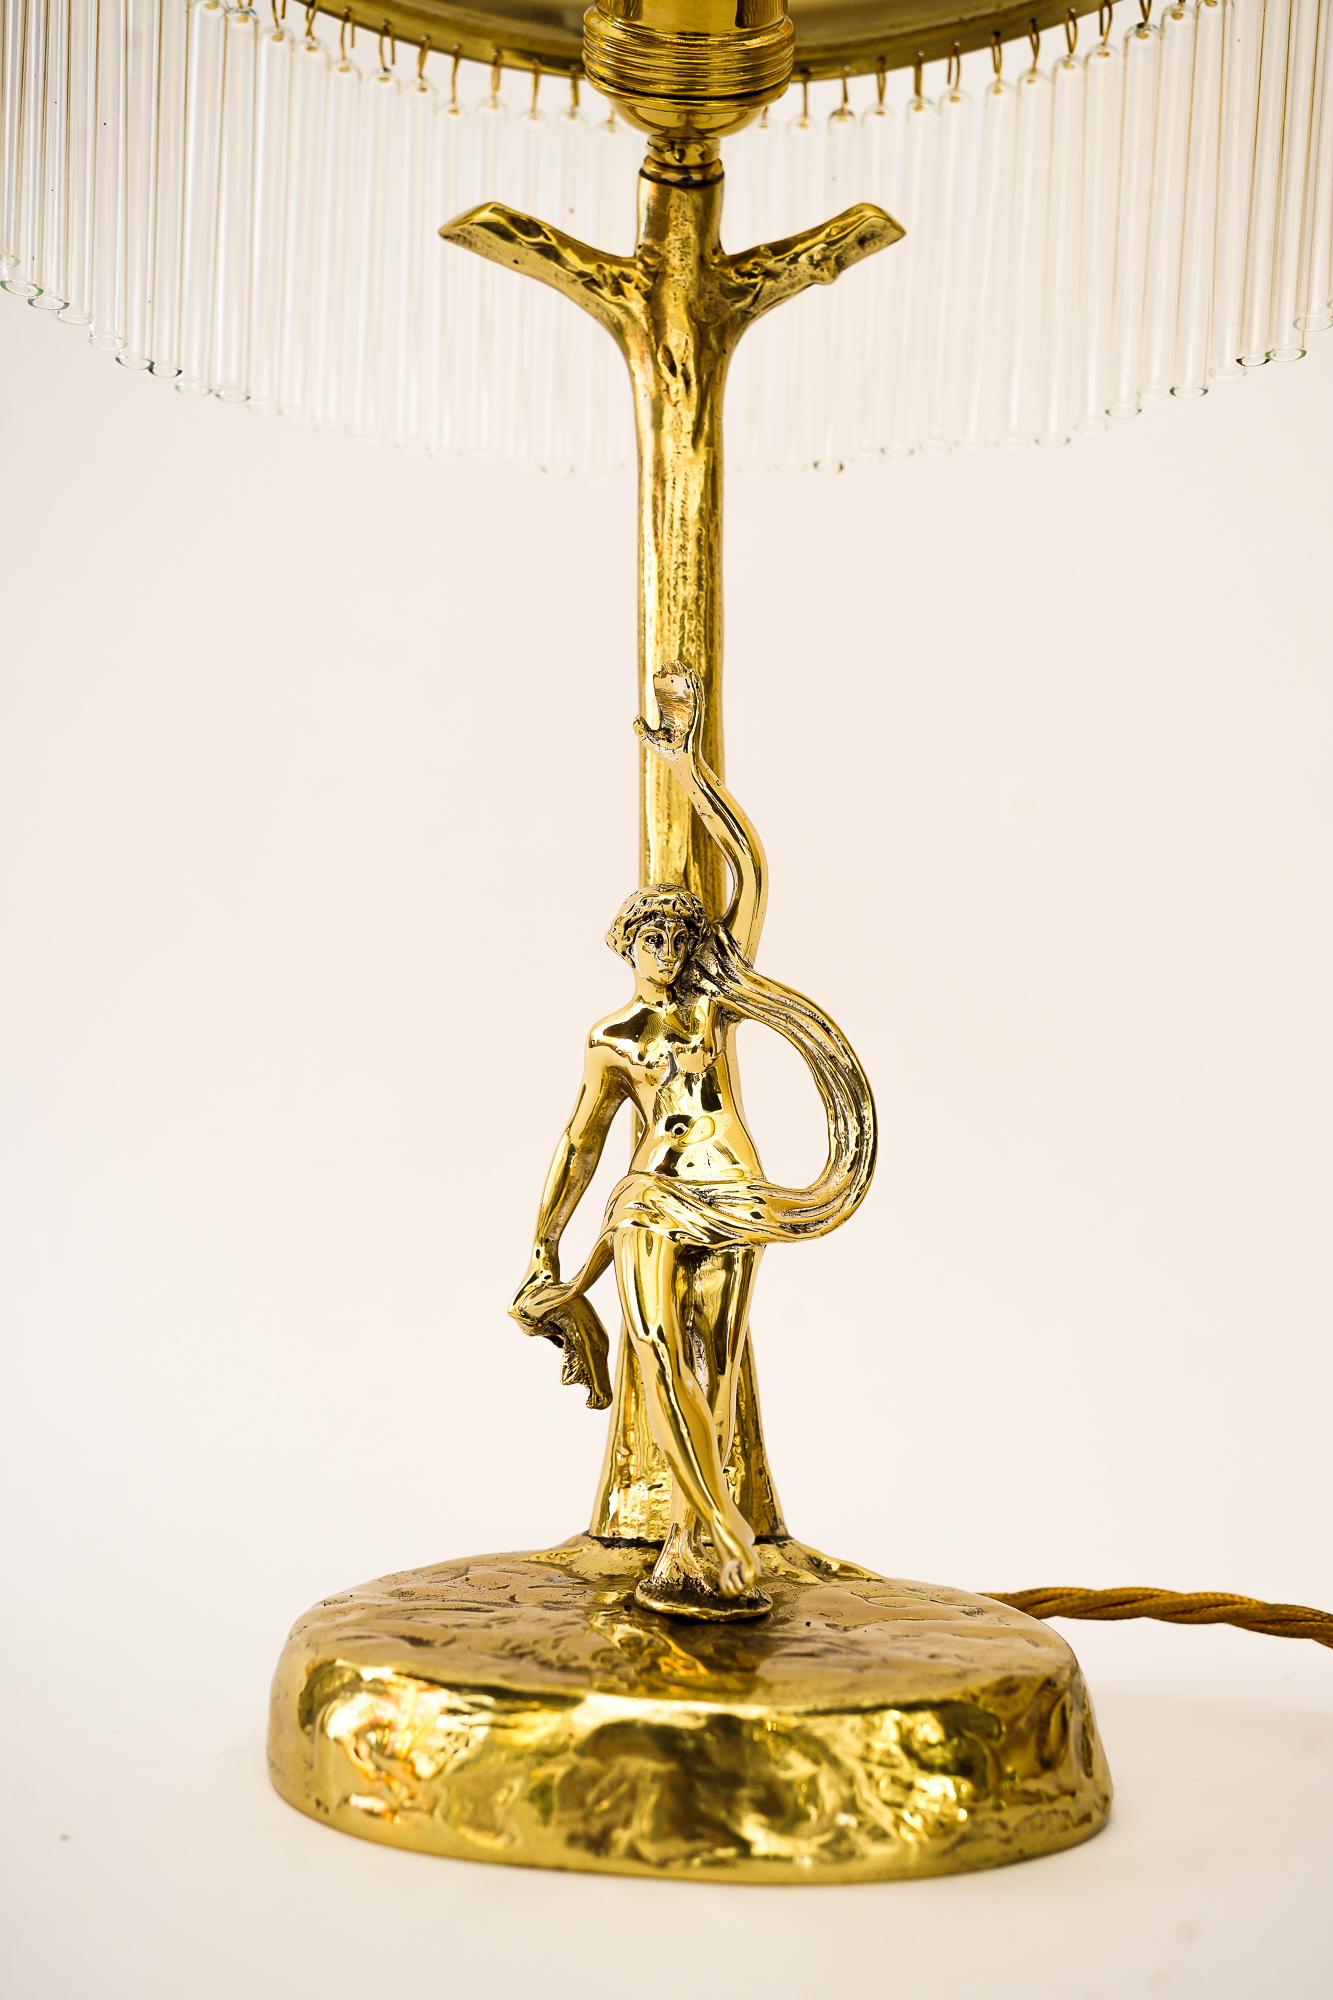 Lampe de bureau Jugendstil avec abat-jour en verre antique d'origine viennois, années 1910
Laiton poli et émaillé au four
Les bâtons de verre sont remplacés (neufs).